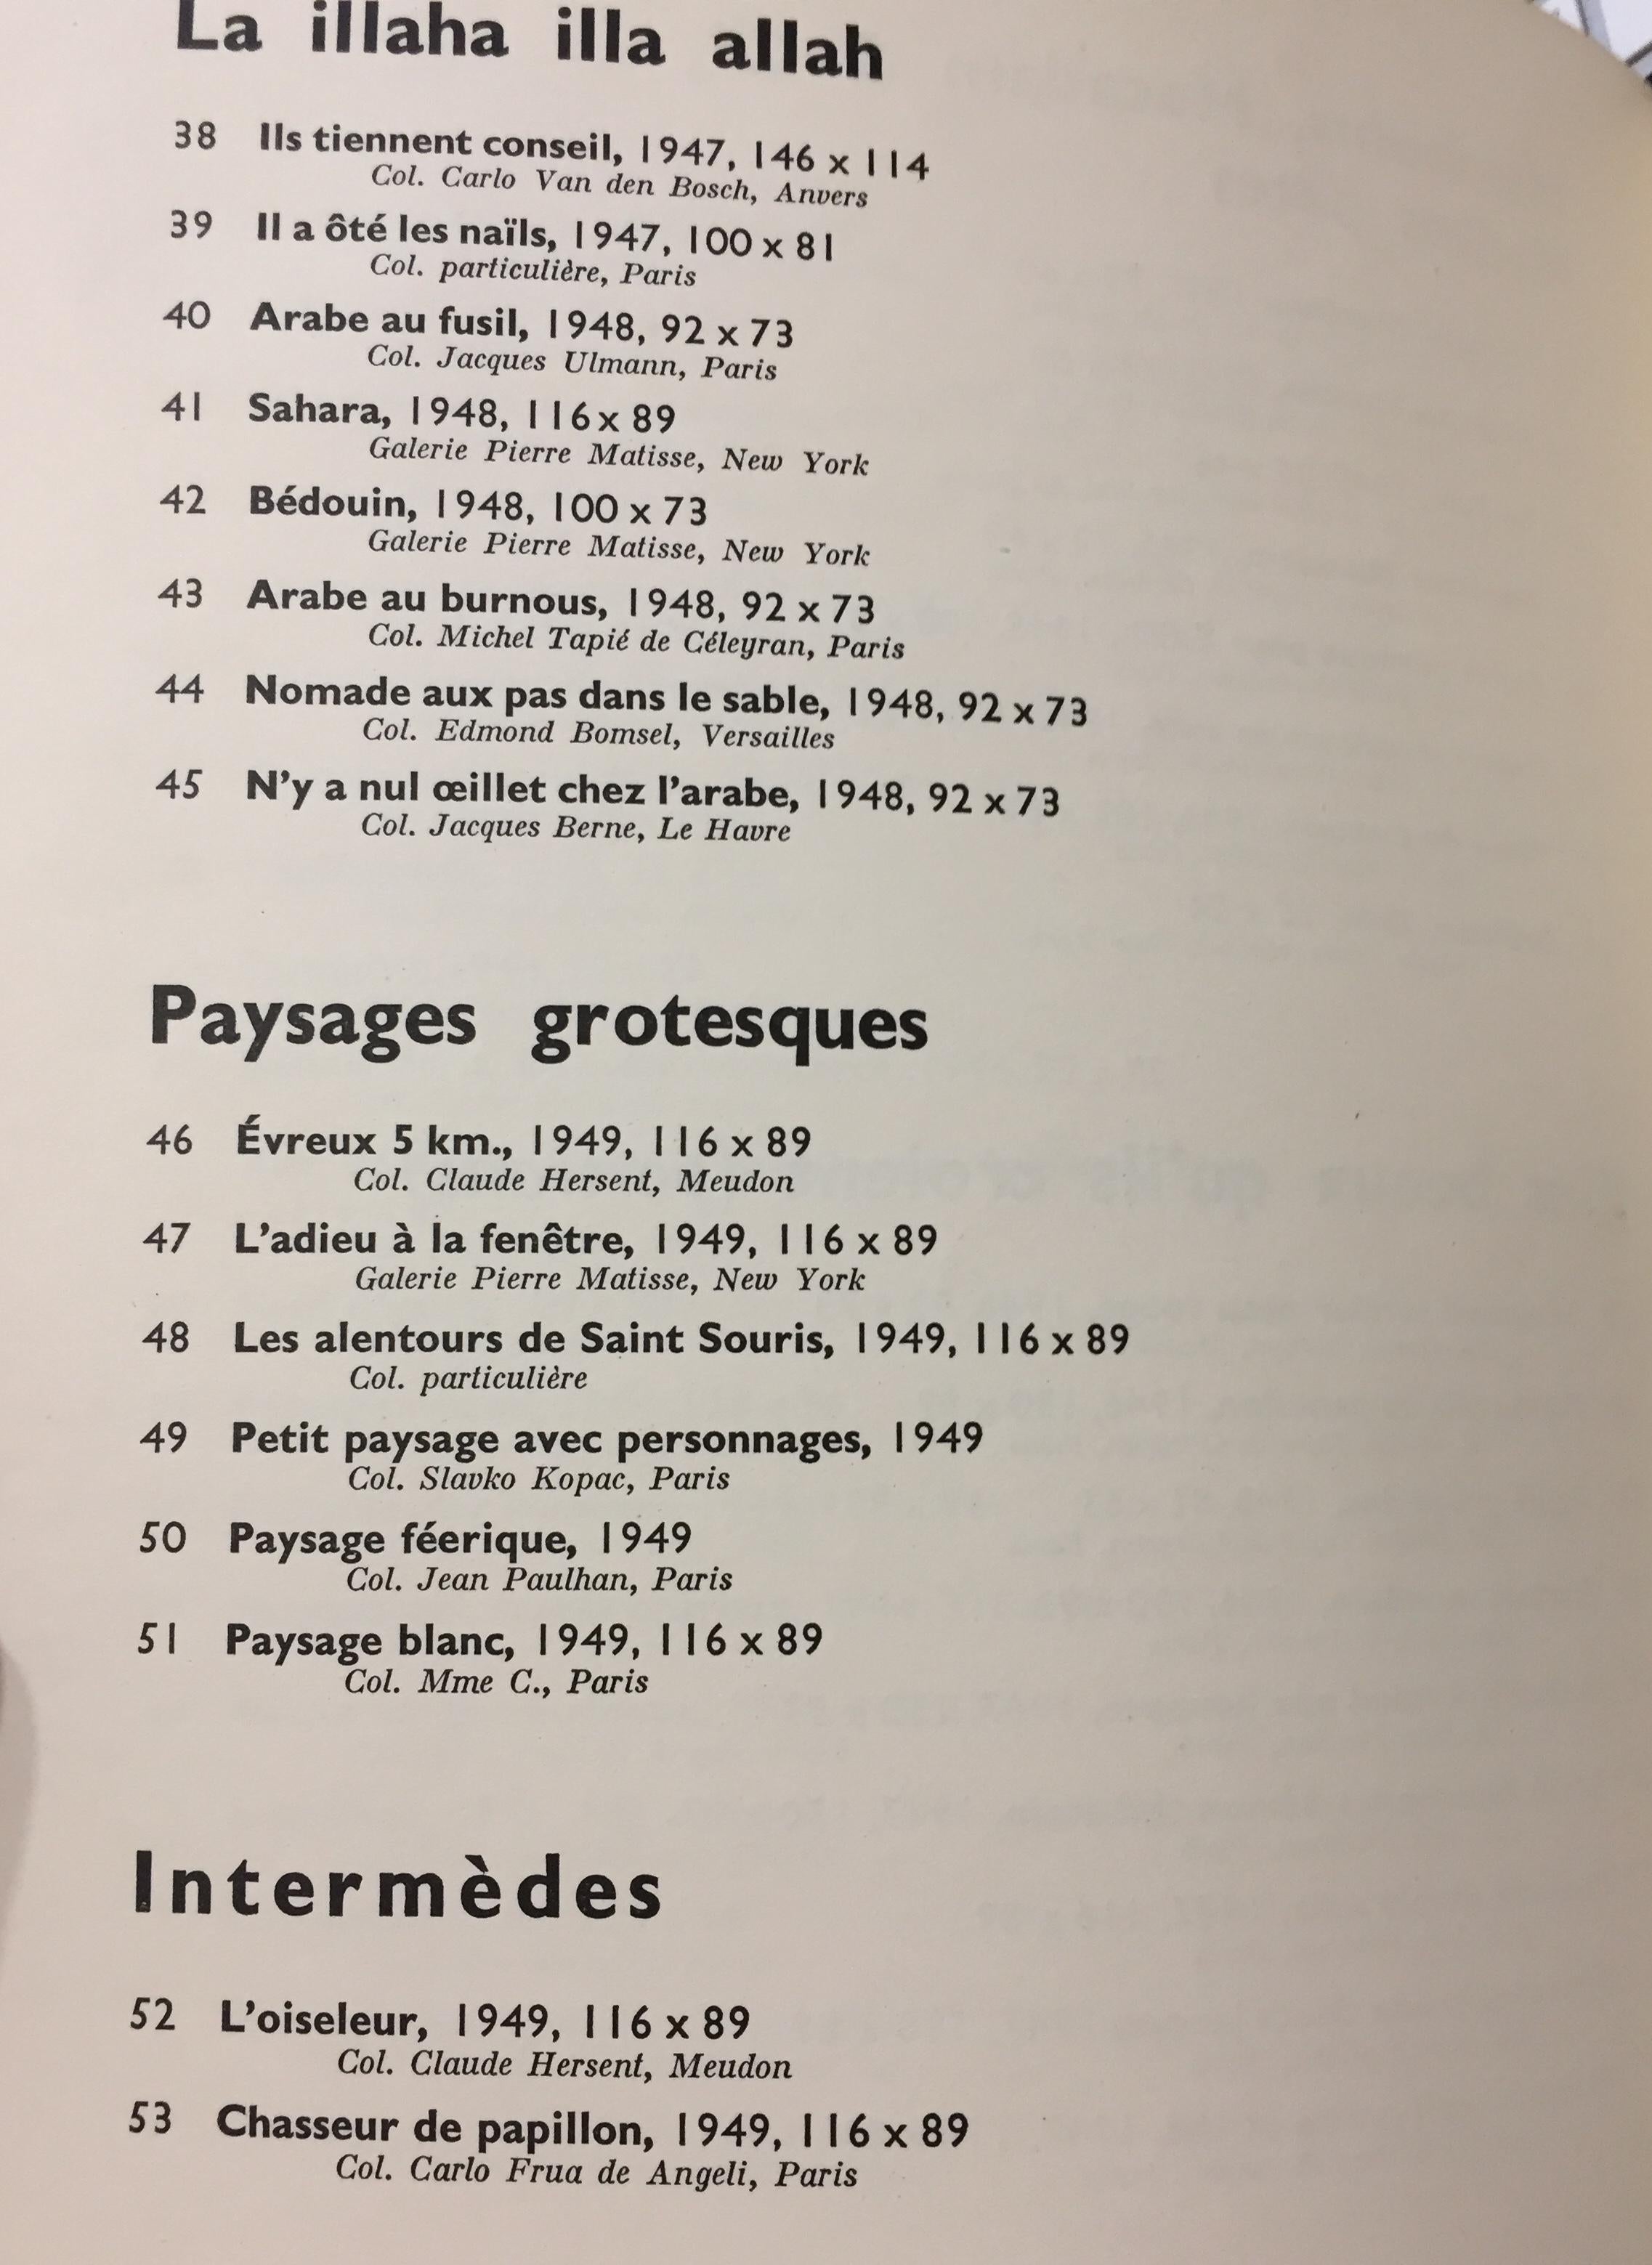 Important et rare catalogue de l'exposition tenue à Circle Volley du 17 mars au 17 avril 1954.

Imprimée par Mourlot, la couverture du catalogue est une photolithographie d'après une œuvre de Dubuffet. Il comprend 193 descriptions des œuvres de